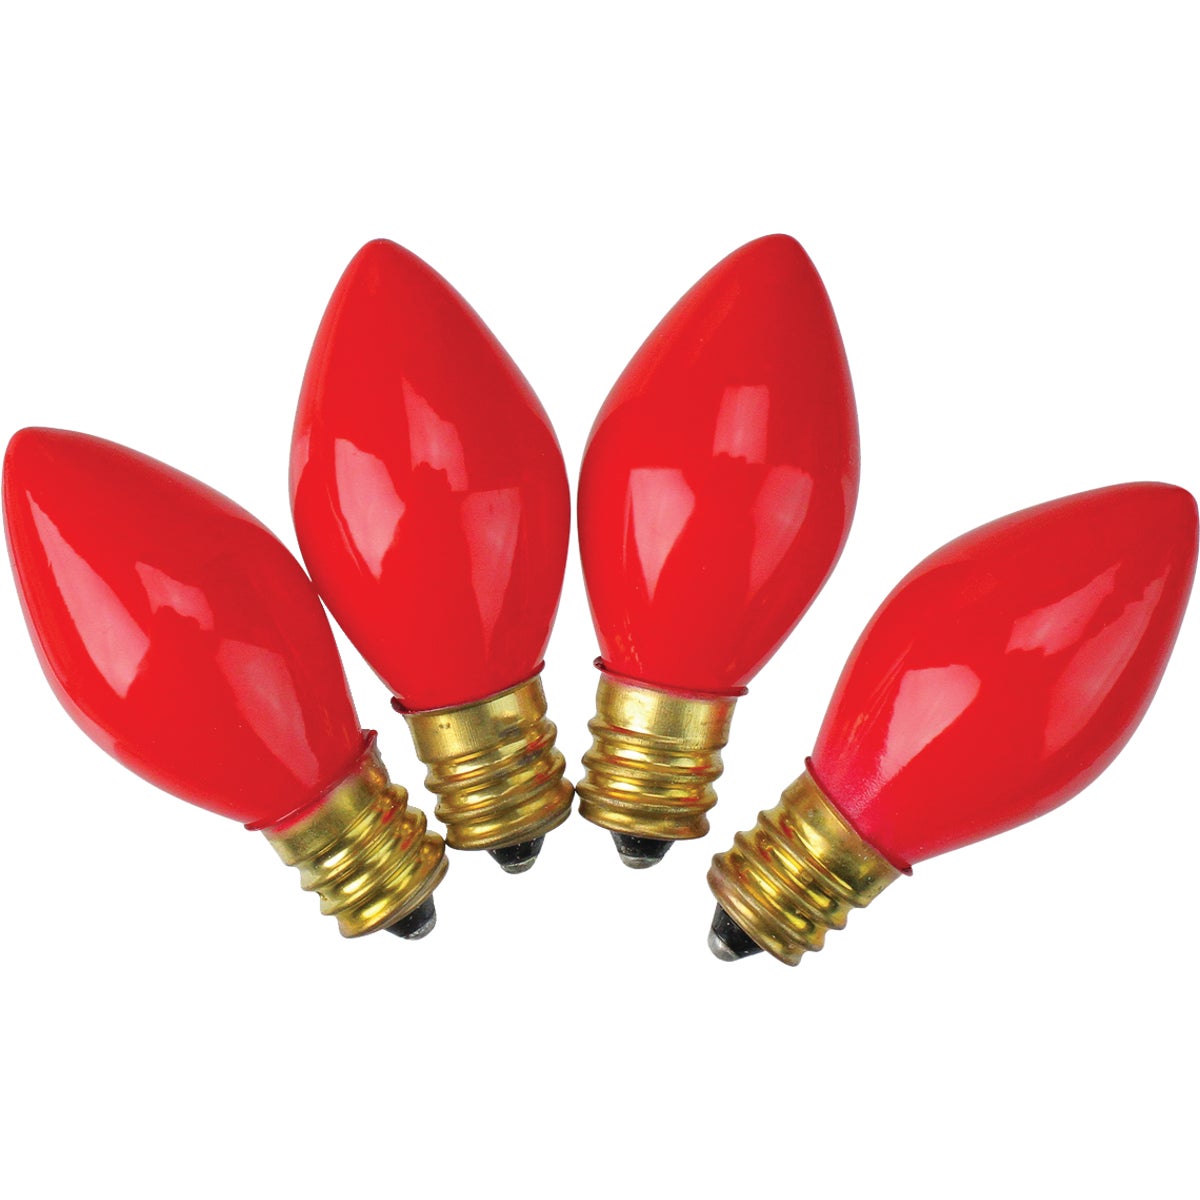 J Hofert C7 Red Ceramic 125V Replacement Light Bulb (4-Pack)